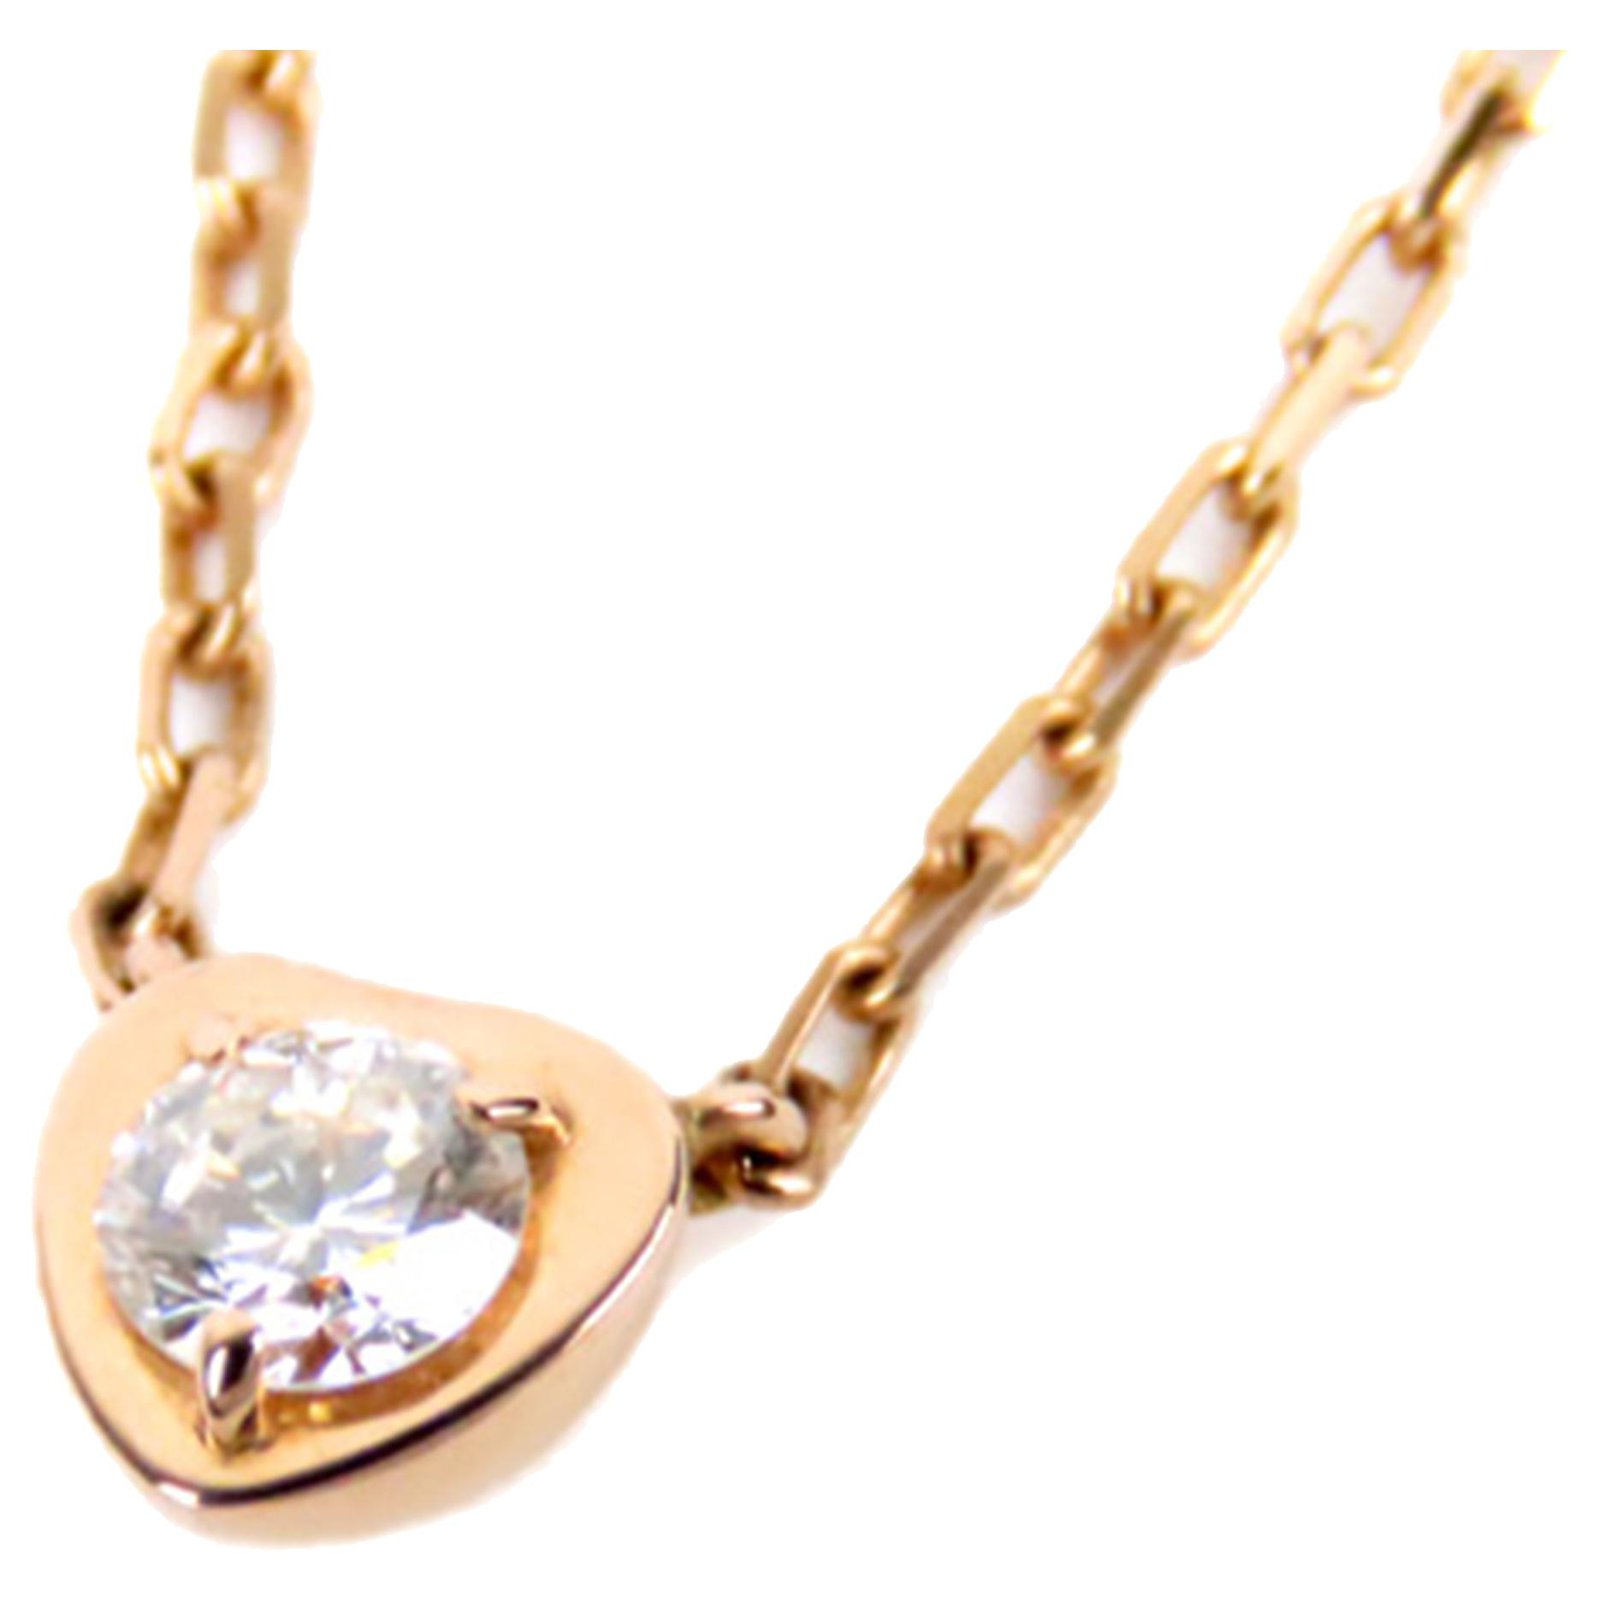 cartier diamants legers necklace